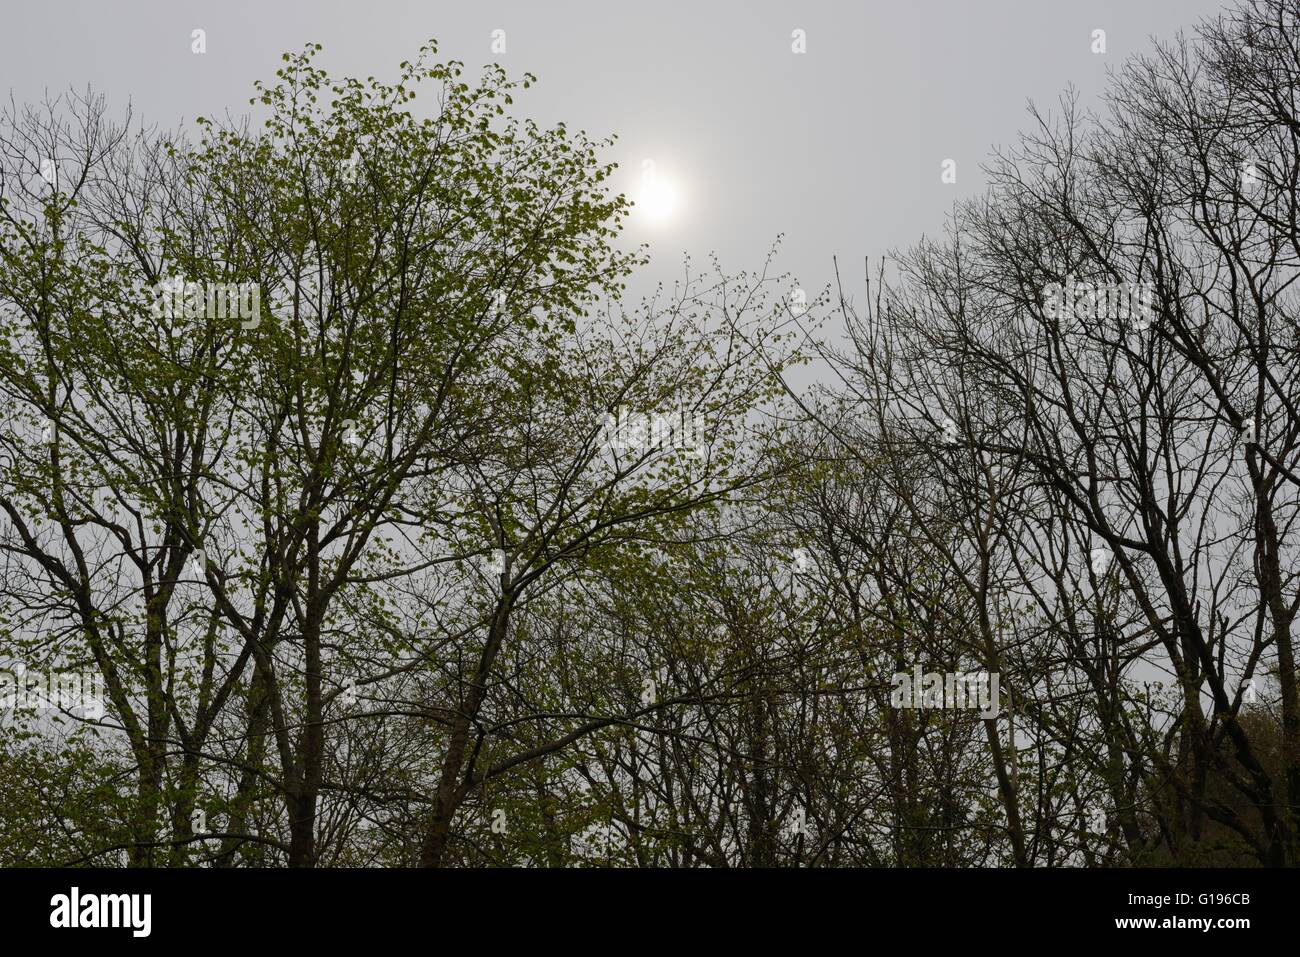 Wych Elm, Ulmus glabra trees in Spring in hazy misty sunshine, Wales, UK Stock Photo